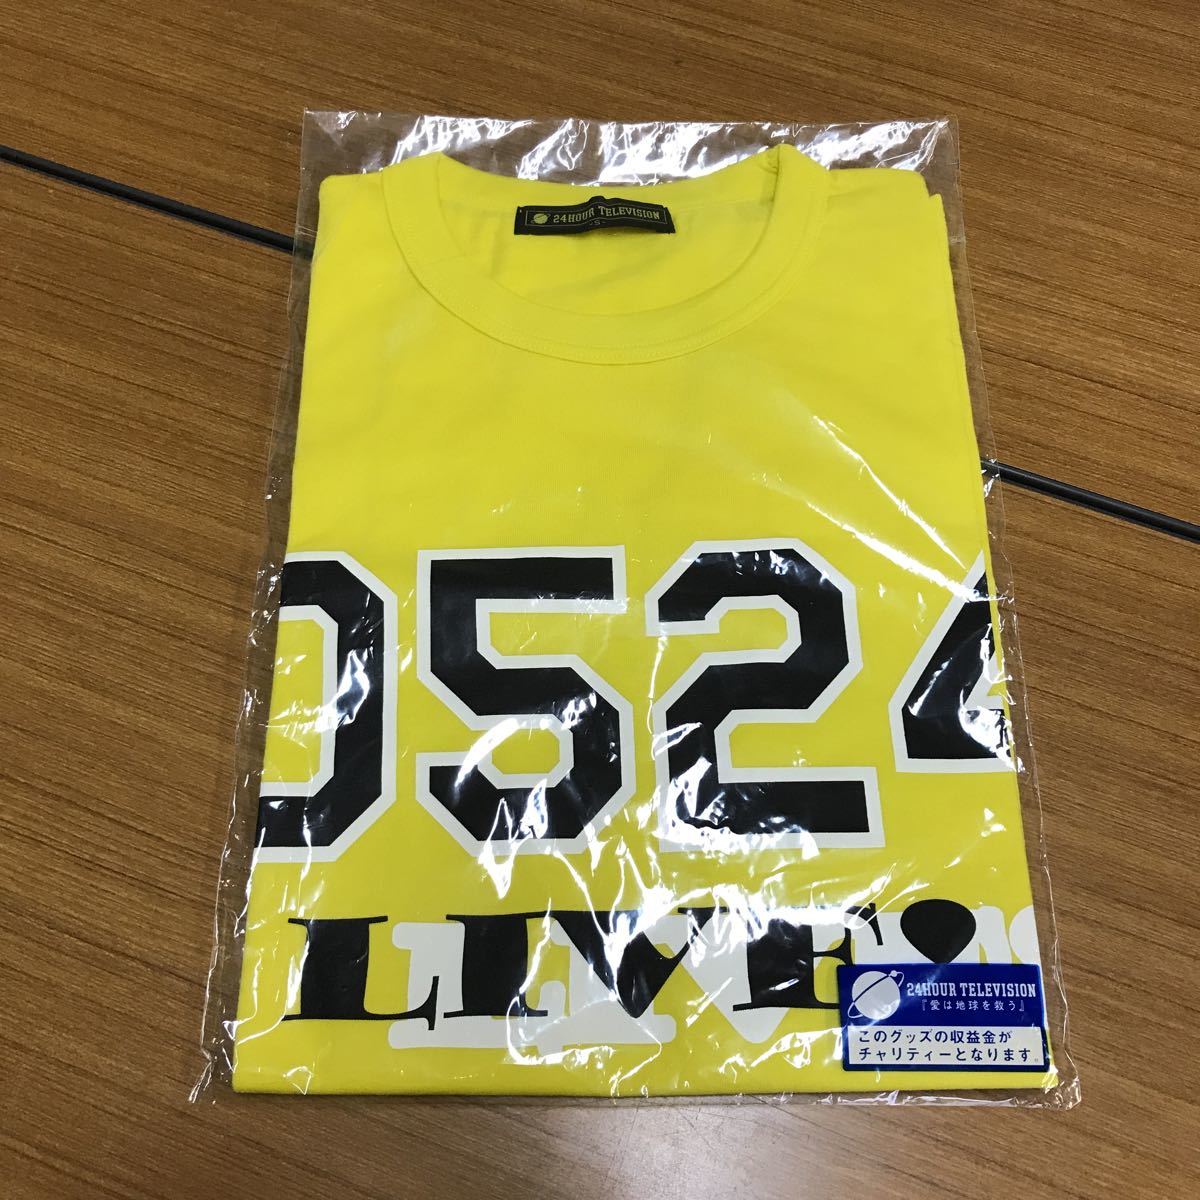 101 24 час телевизор 2005 год благотворительность футболка Katori Shingo дизайн желтый размер S 20220711